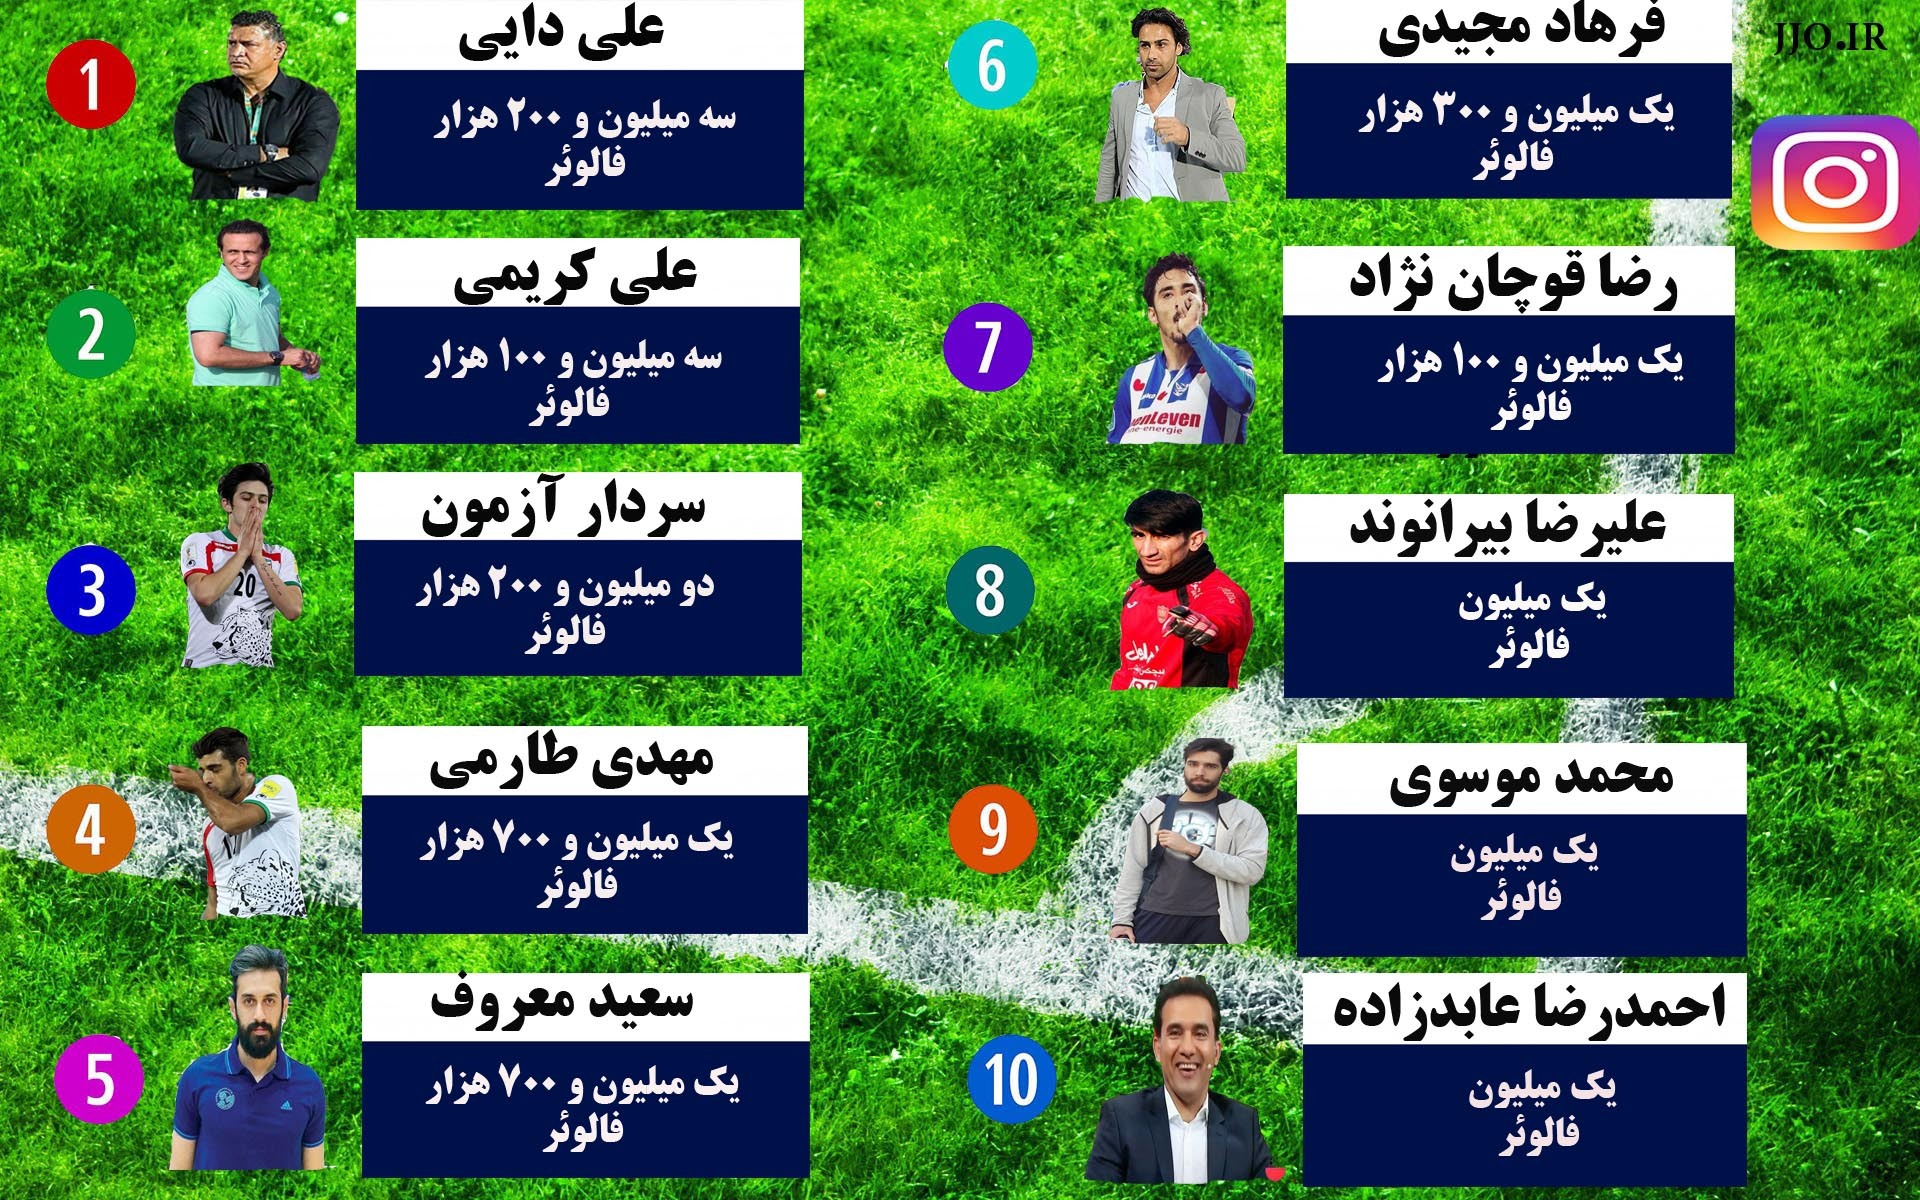 محبوب ترین ورزشکاران ایرانیِ اینستاگرام در سال 96 +اینفوگرافیک